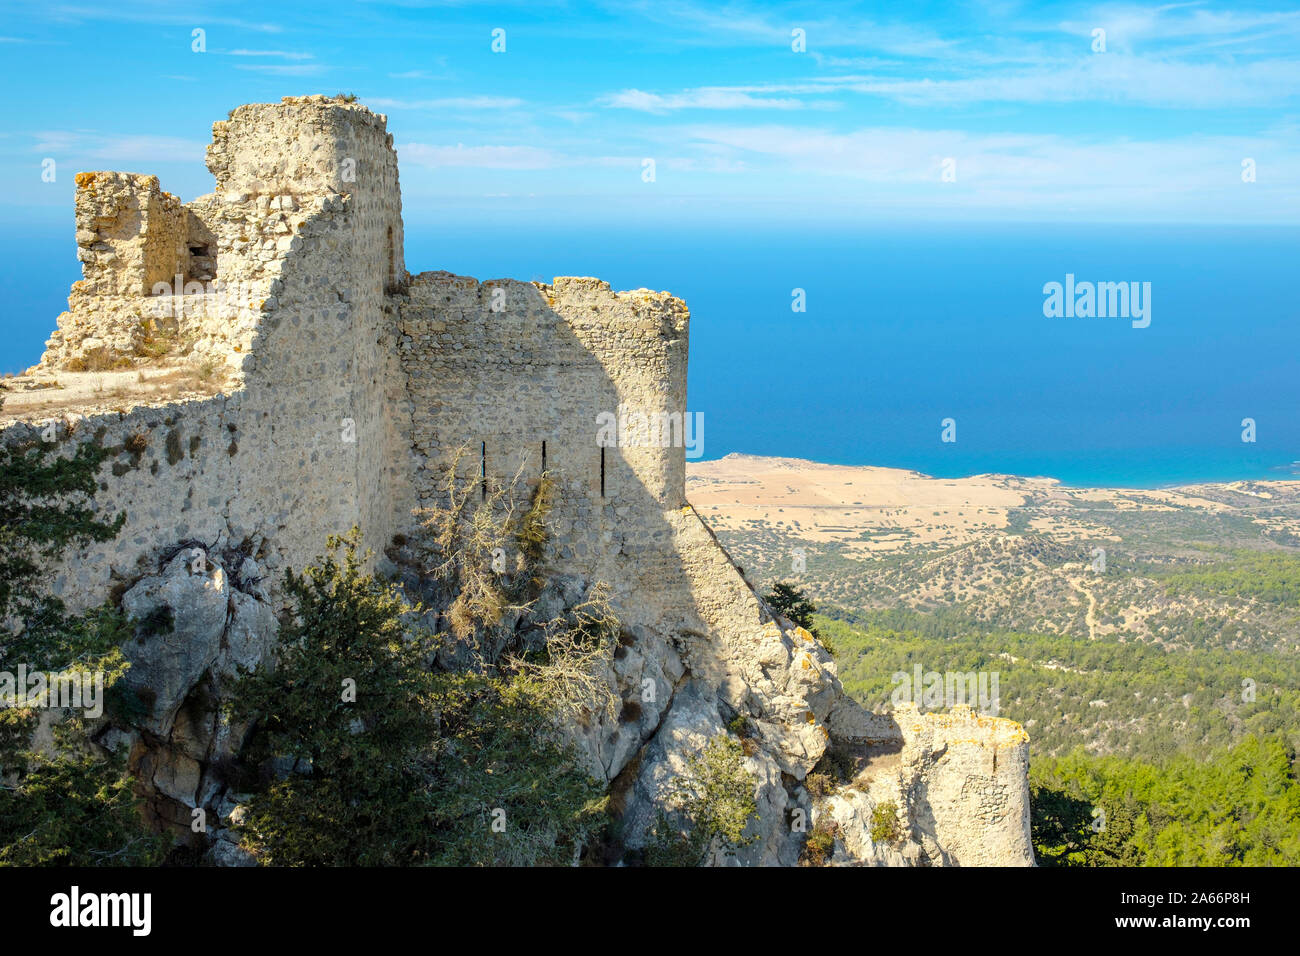 Le Château de Kantara, Byzantine château des Croisés dans les montagnes de Kyrenia Famagusta, Kaplica, Iskele (District), à Chypre (Chypre du Nord). Banque D'Images